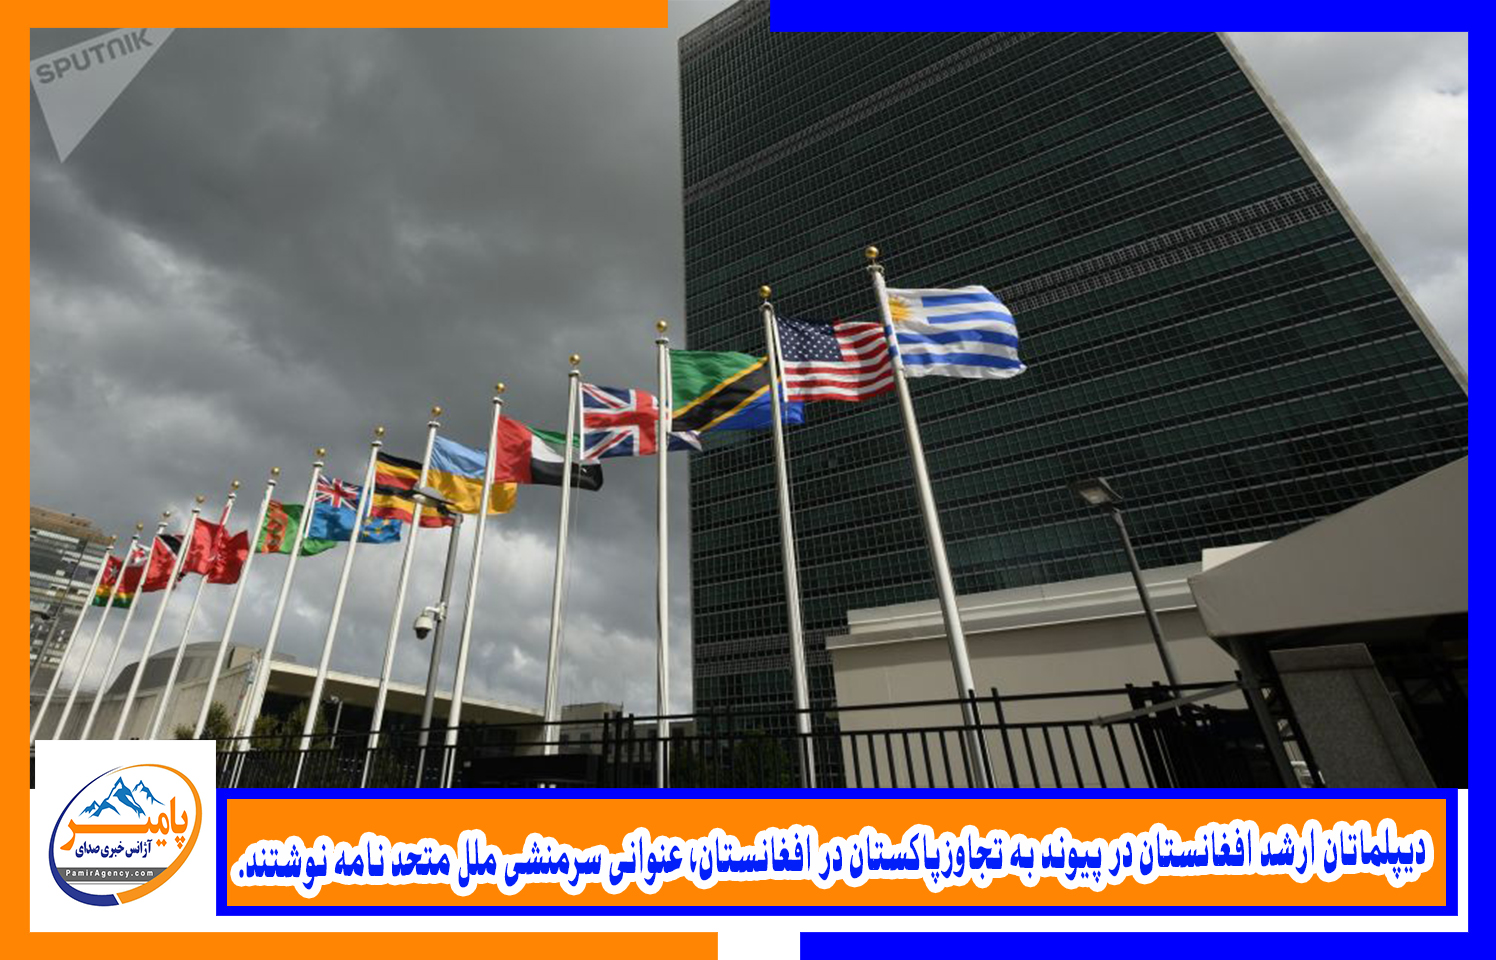 دیپلماتان ارشد افغانستان در پیوند به تجاوزپاکستان در افغانستان، عنوانی سرمنشی ملل متحد نامه نوشتند.